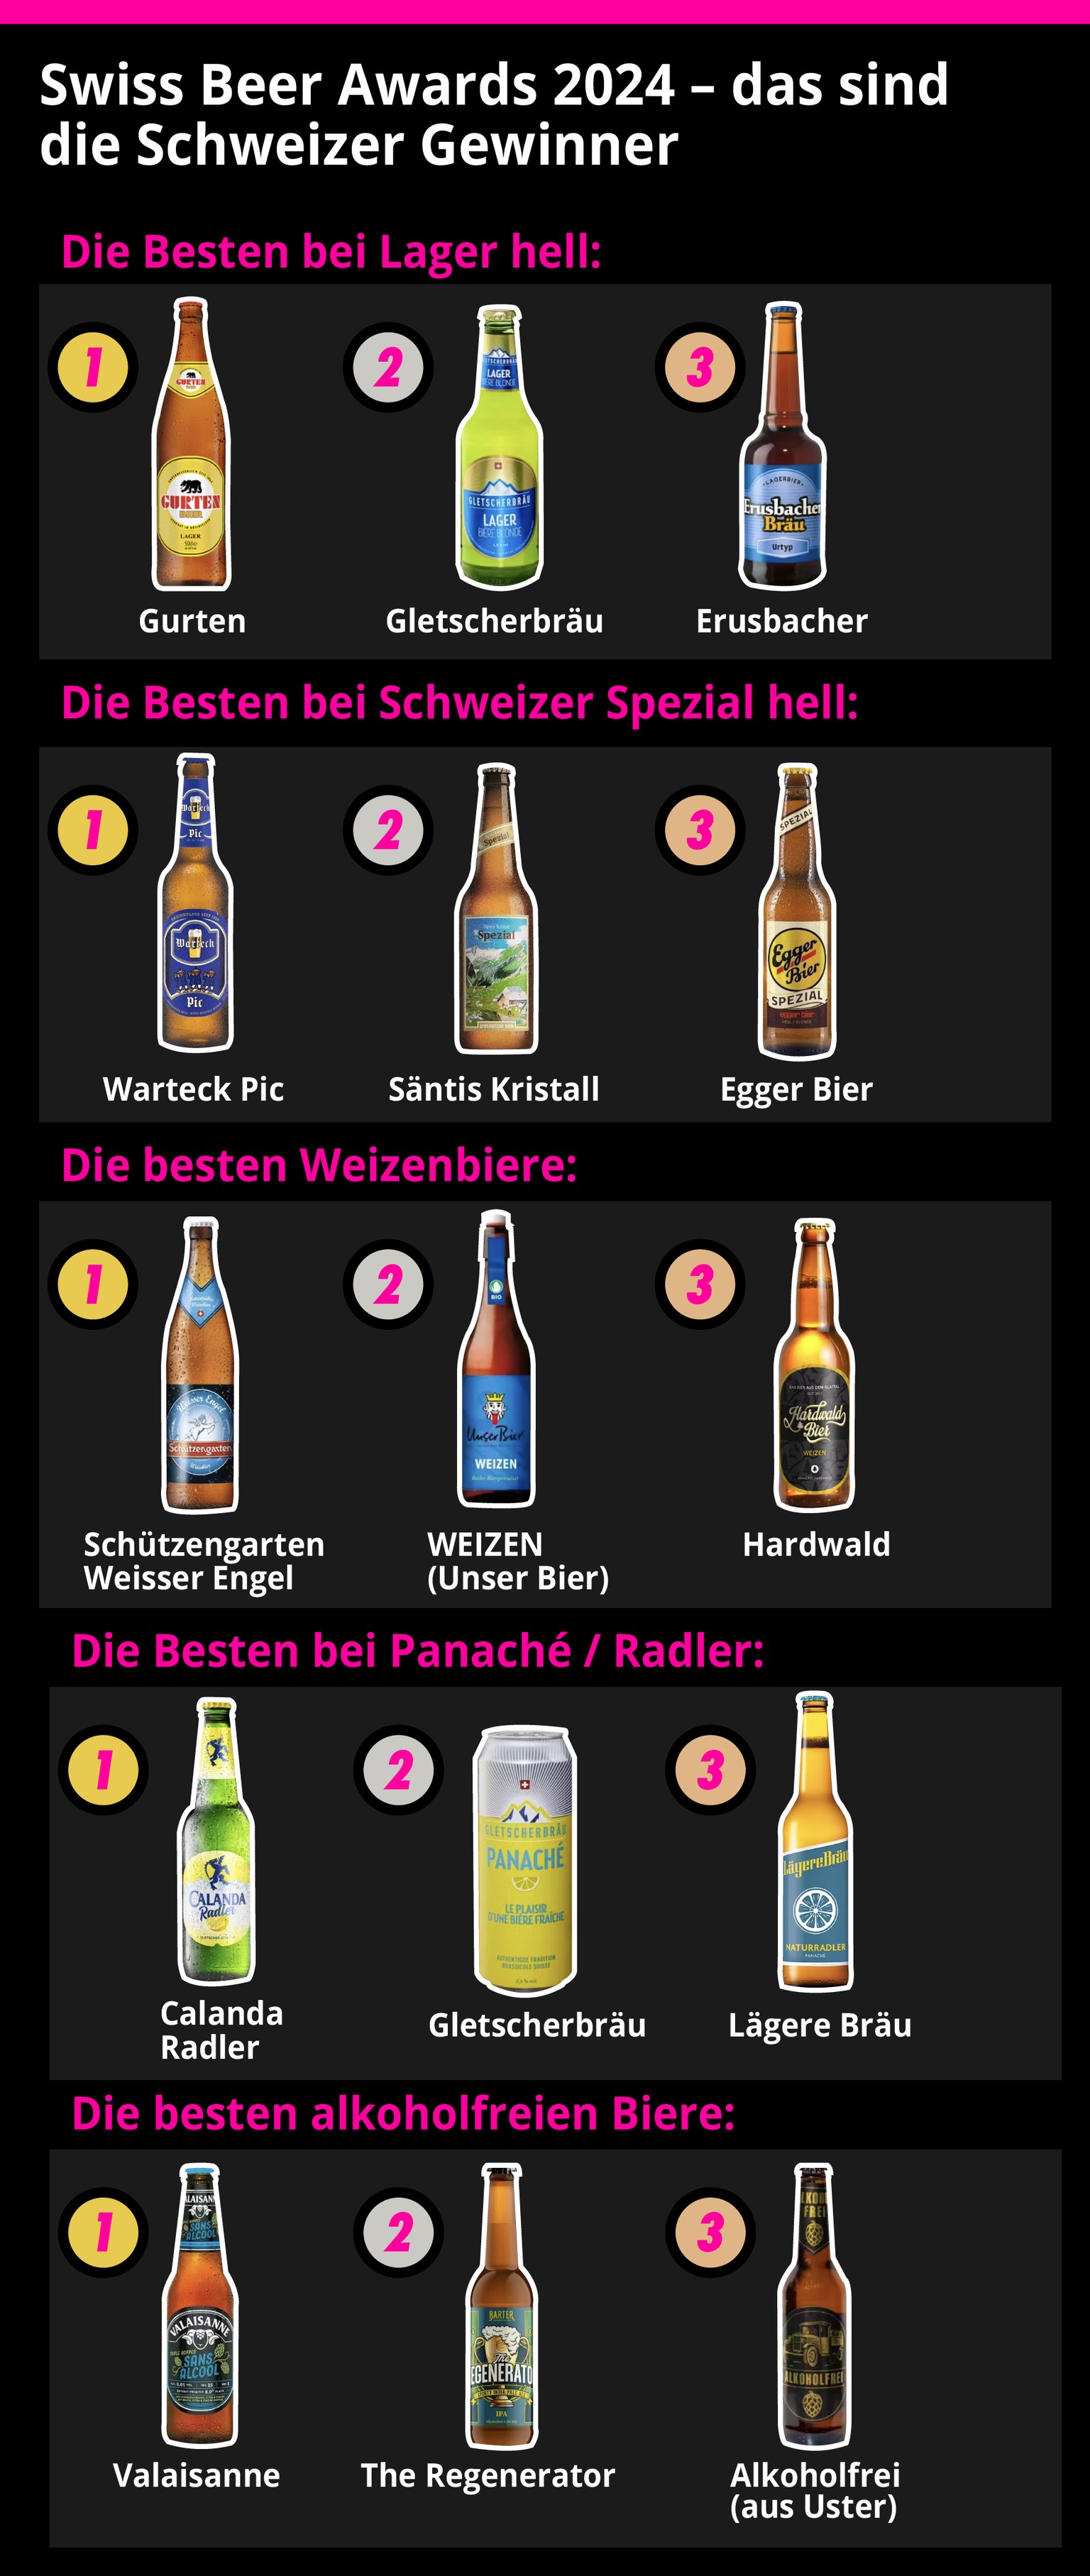 welches schweizer bier zu welchem konzern gehört – und 6 weitere spannende bier-fakten